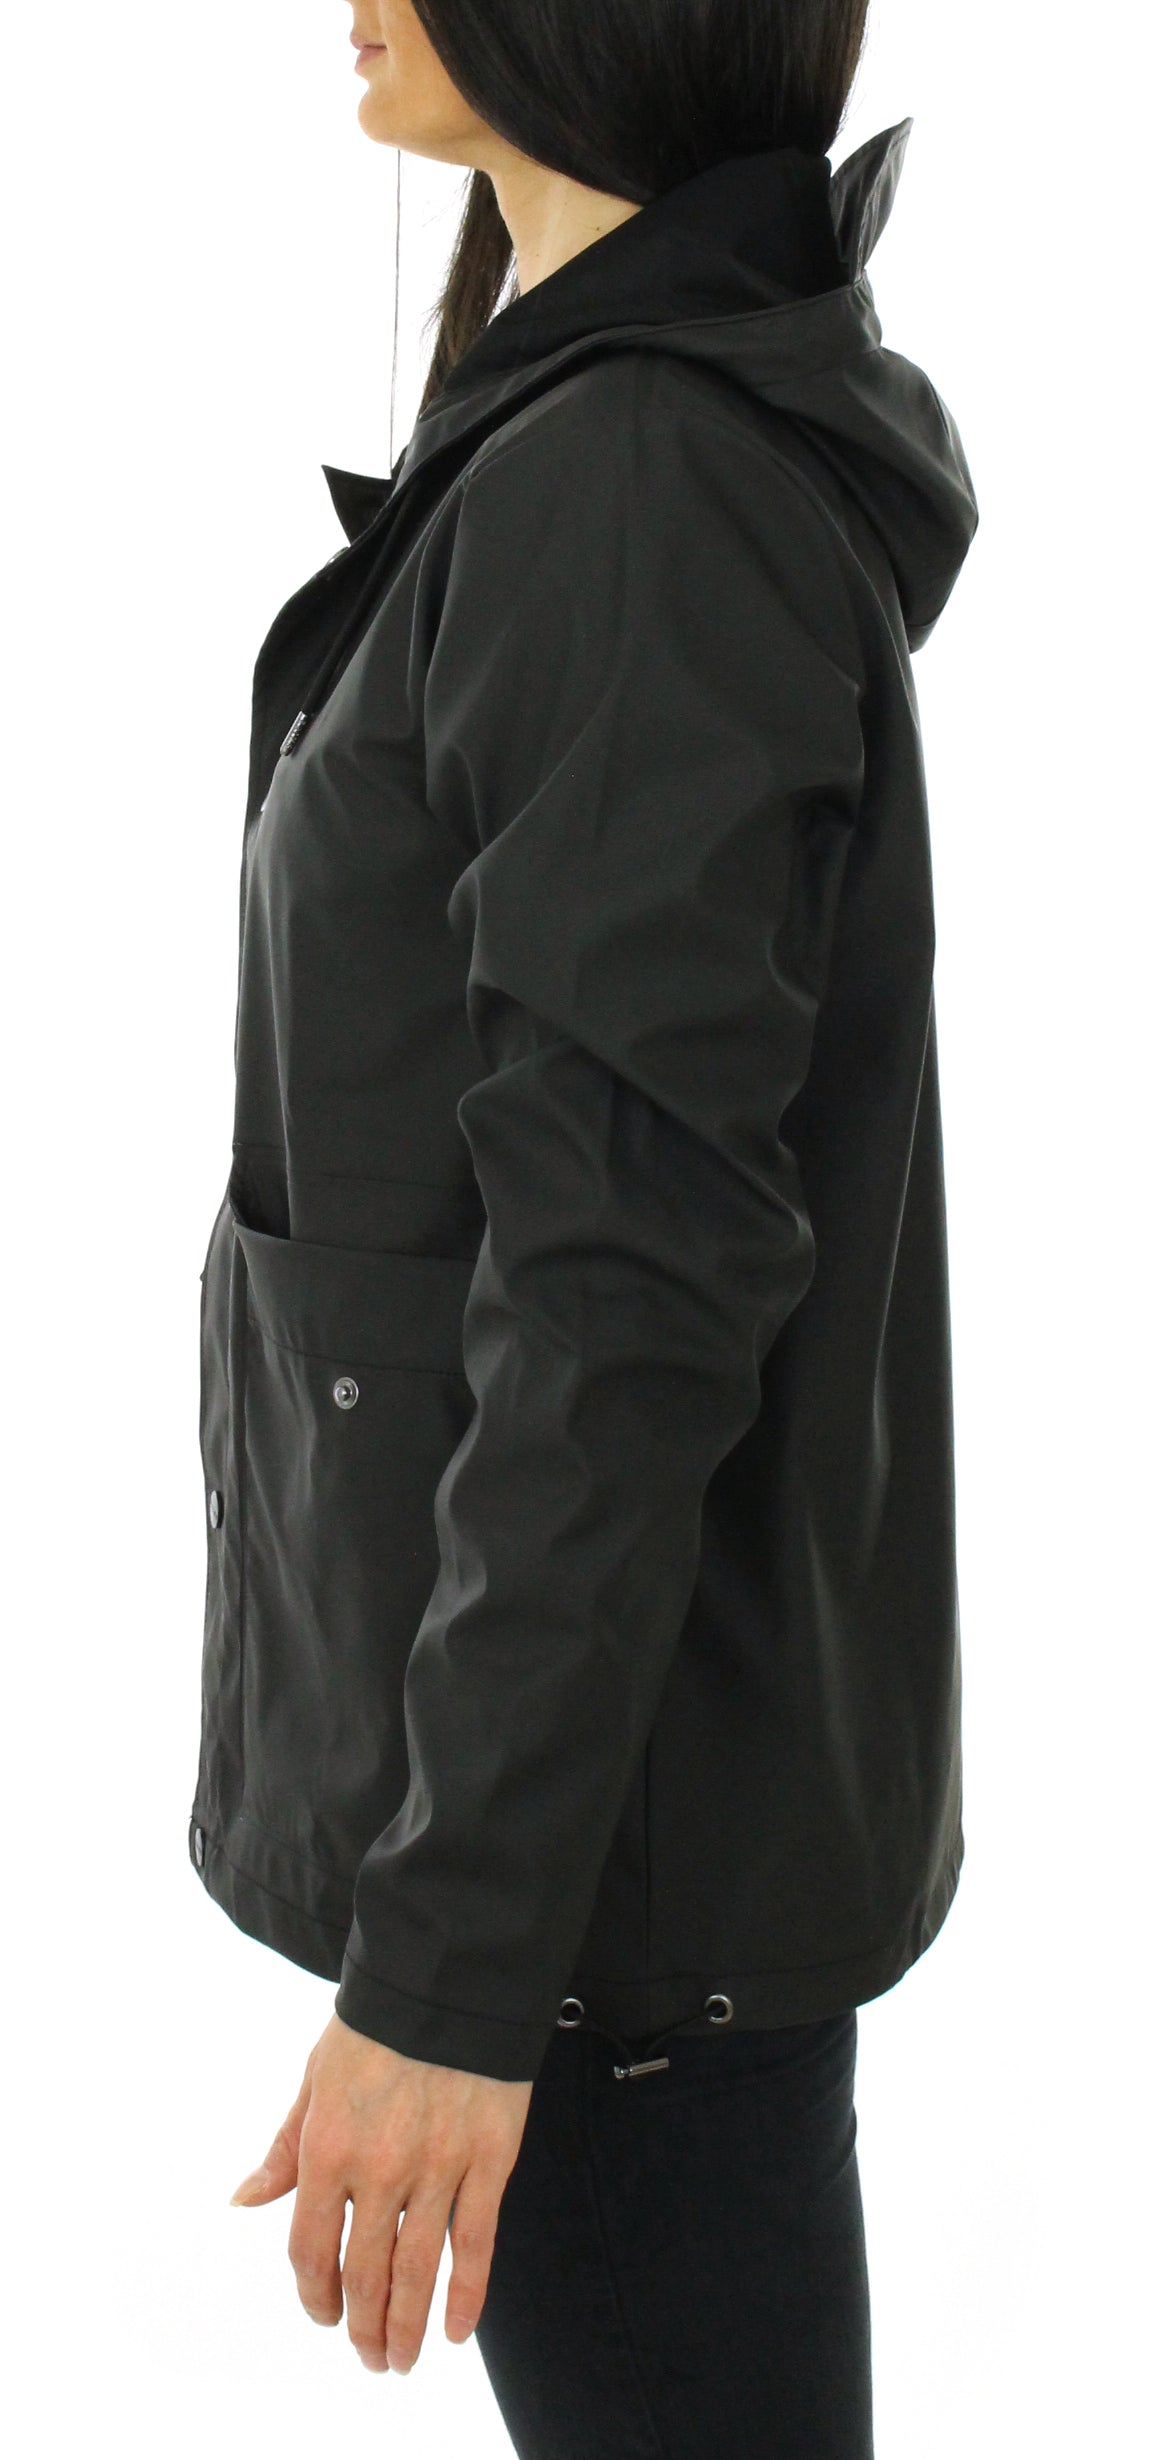 Waterproof Jacket Unisex 1826 black